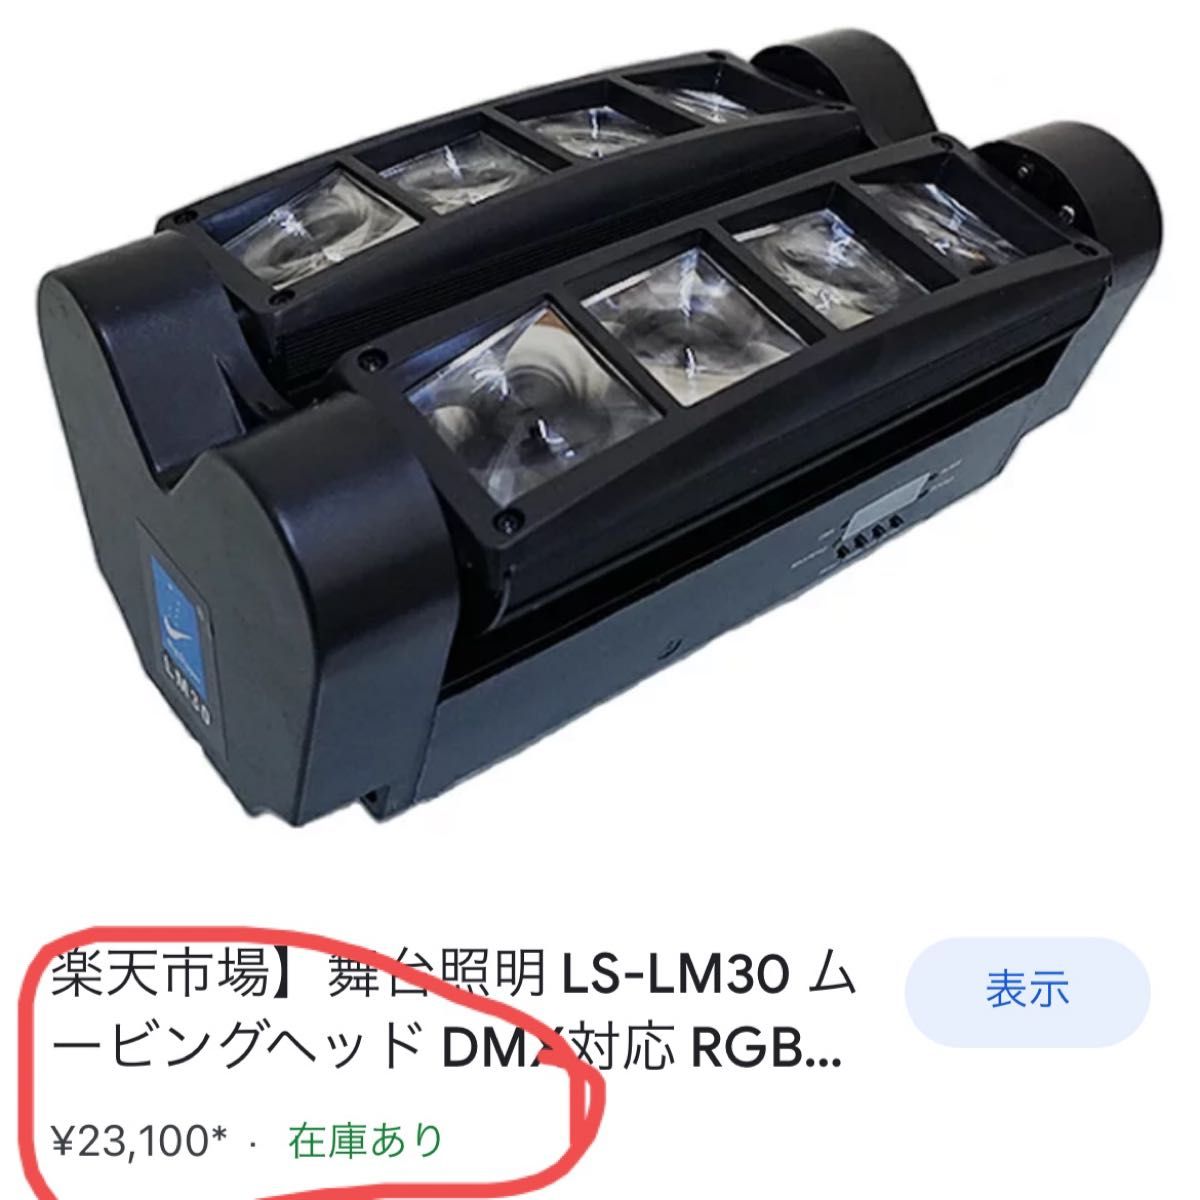 LED ムービングヘッドライトスパイダーライト楽天市場では23000円以上します